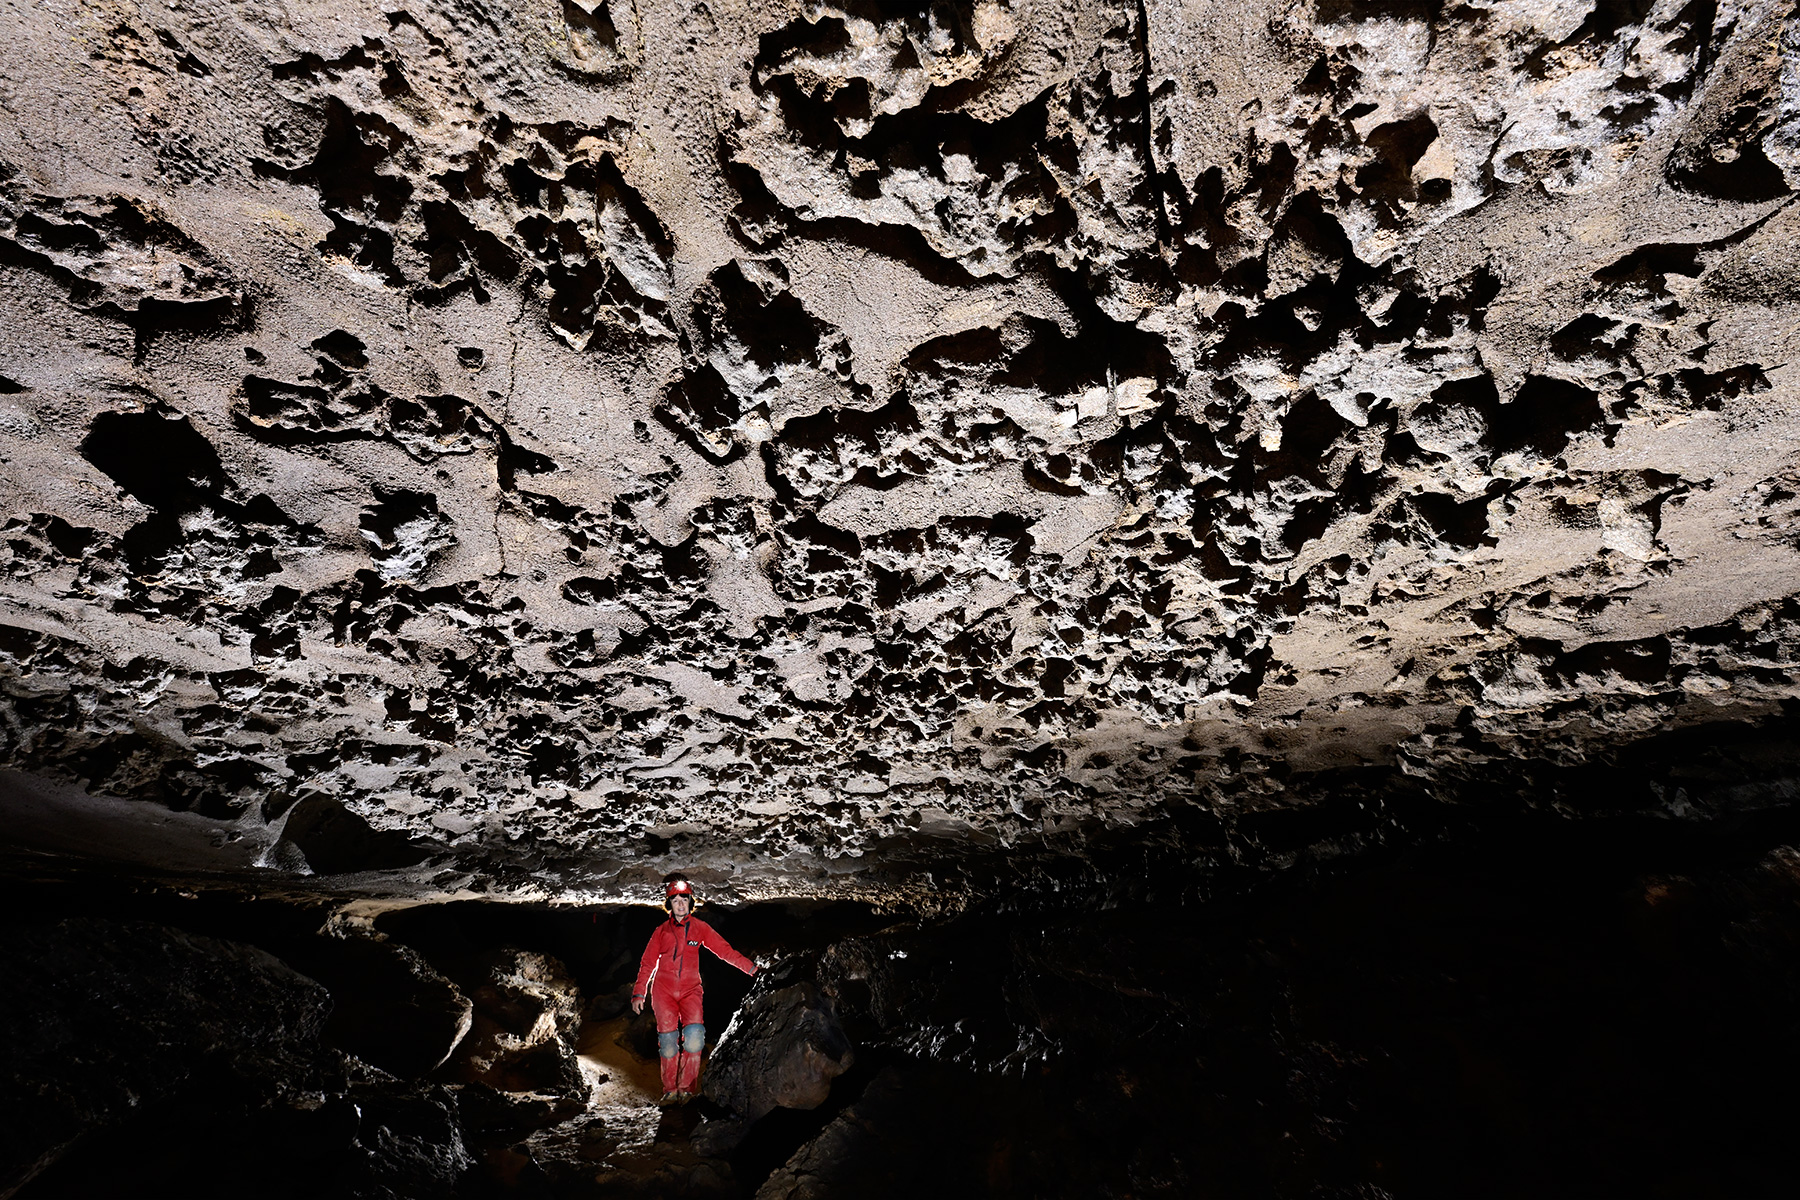 McClung Cave (Virginie occidentale, USA) - Plafond avec des incrustations (spéléo en arrière plan)